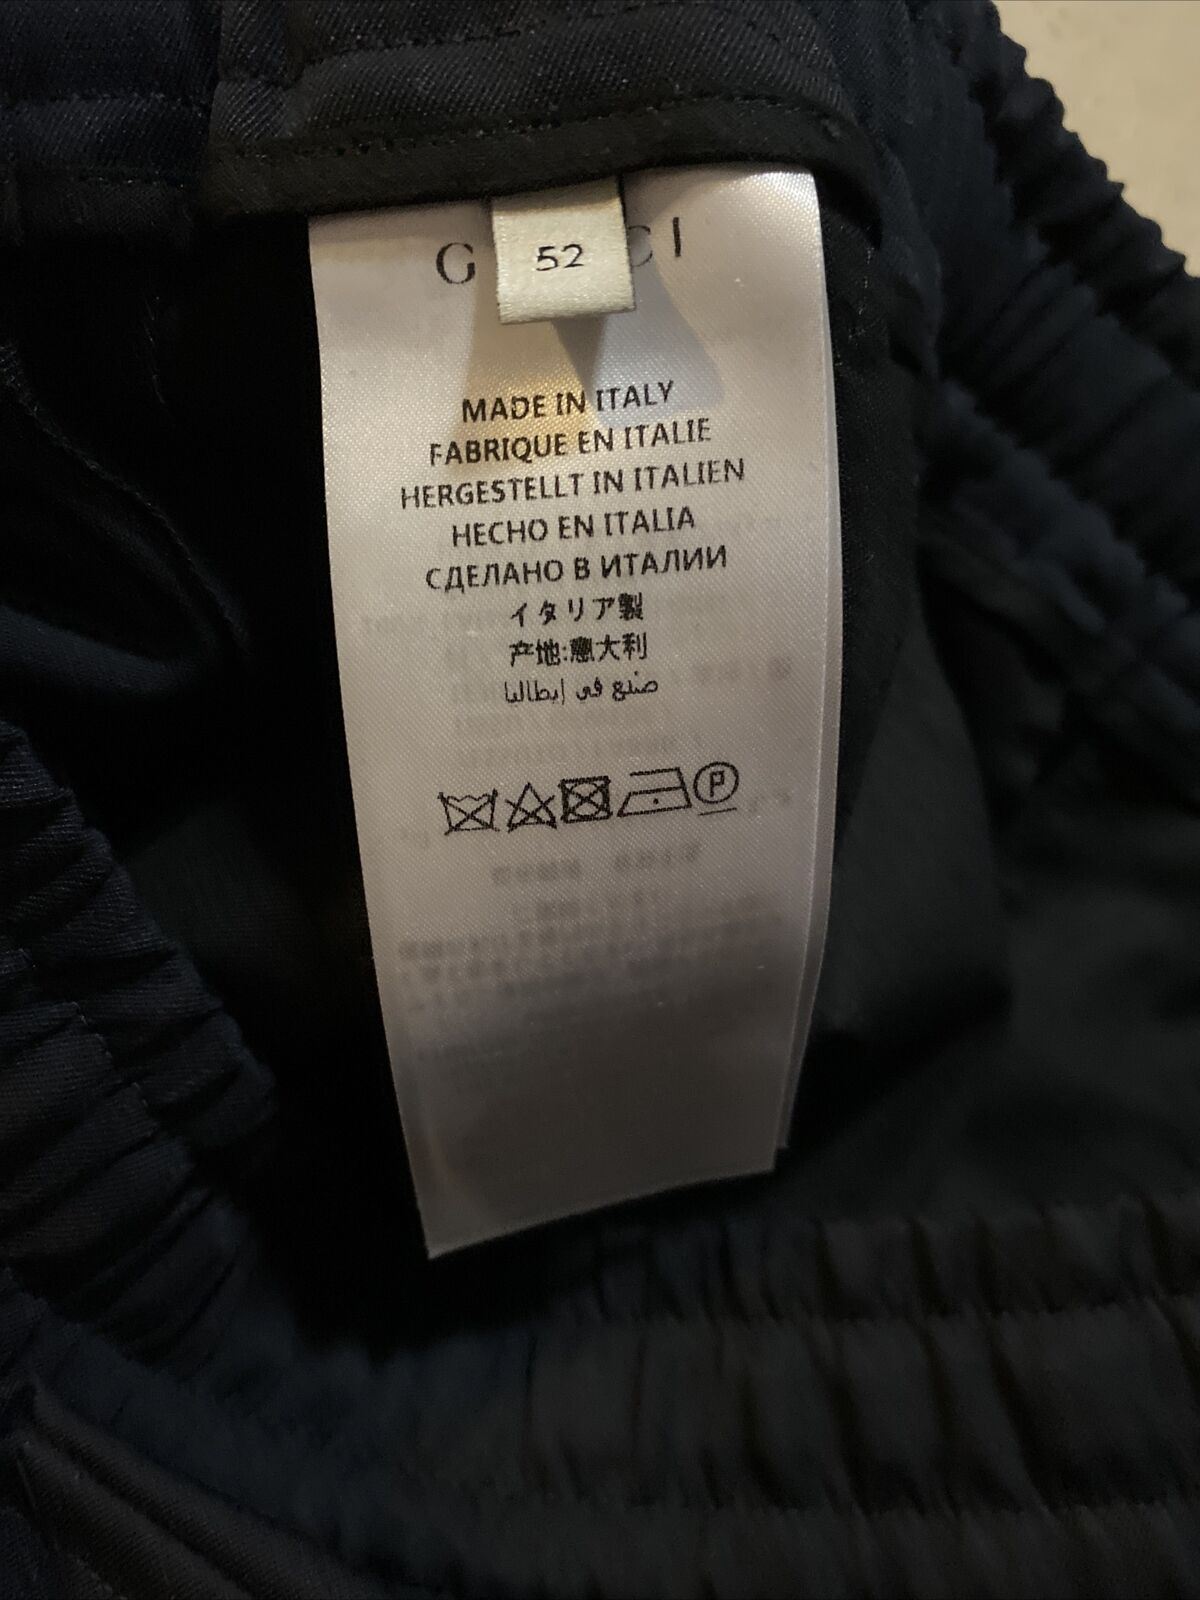 Neue Jegging-Hose aus Wolle für Herren von Gucci im Wert von 1.300 US-Dollar, Mitternachtsblau, 36 US (52 EU), Italien